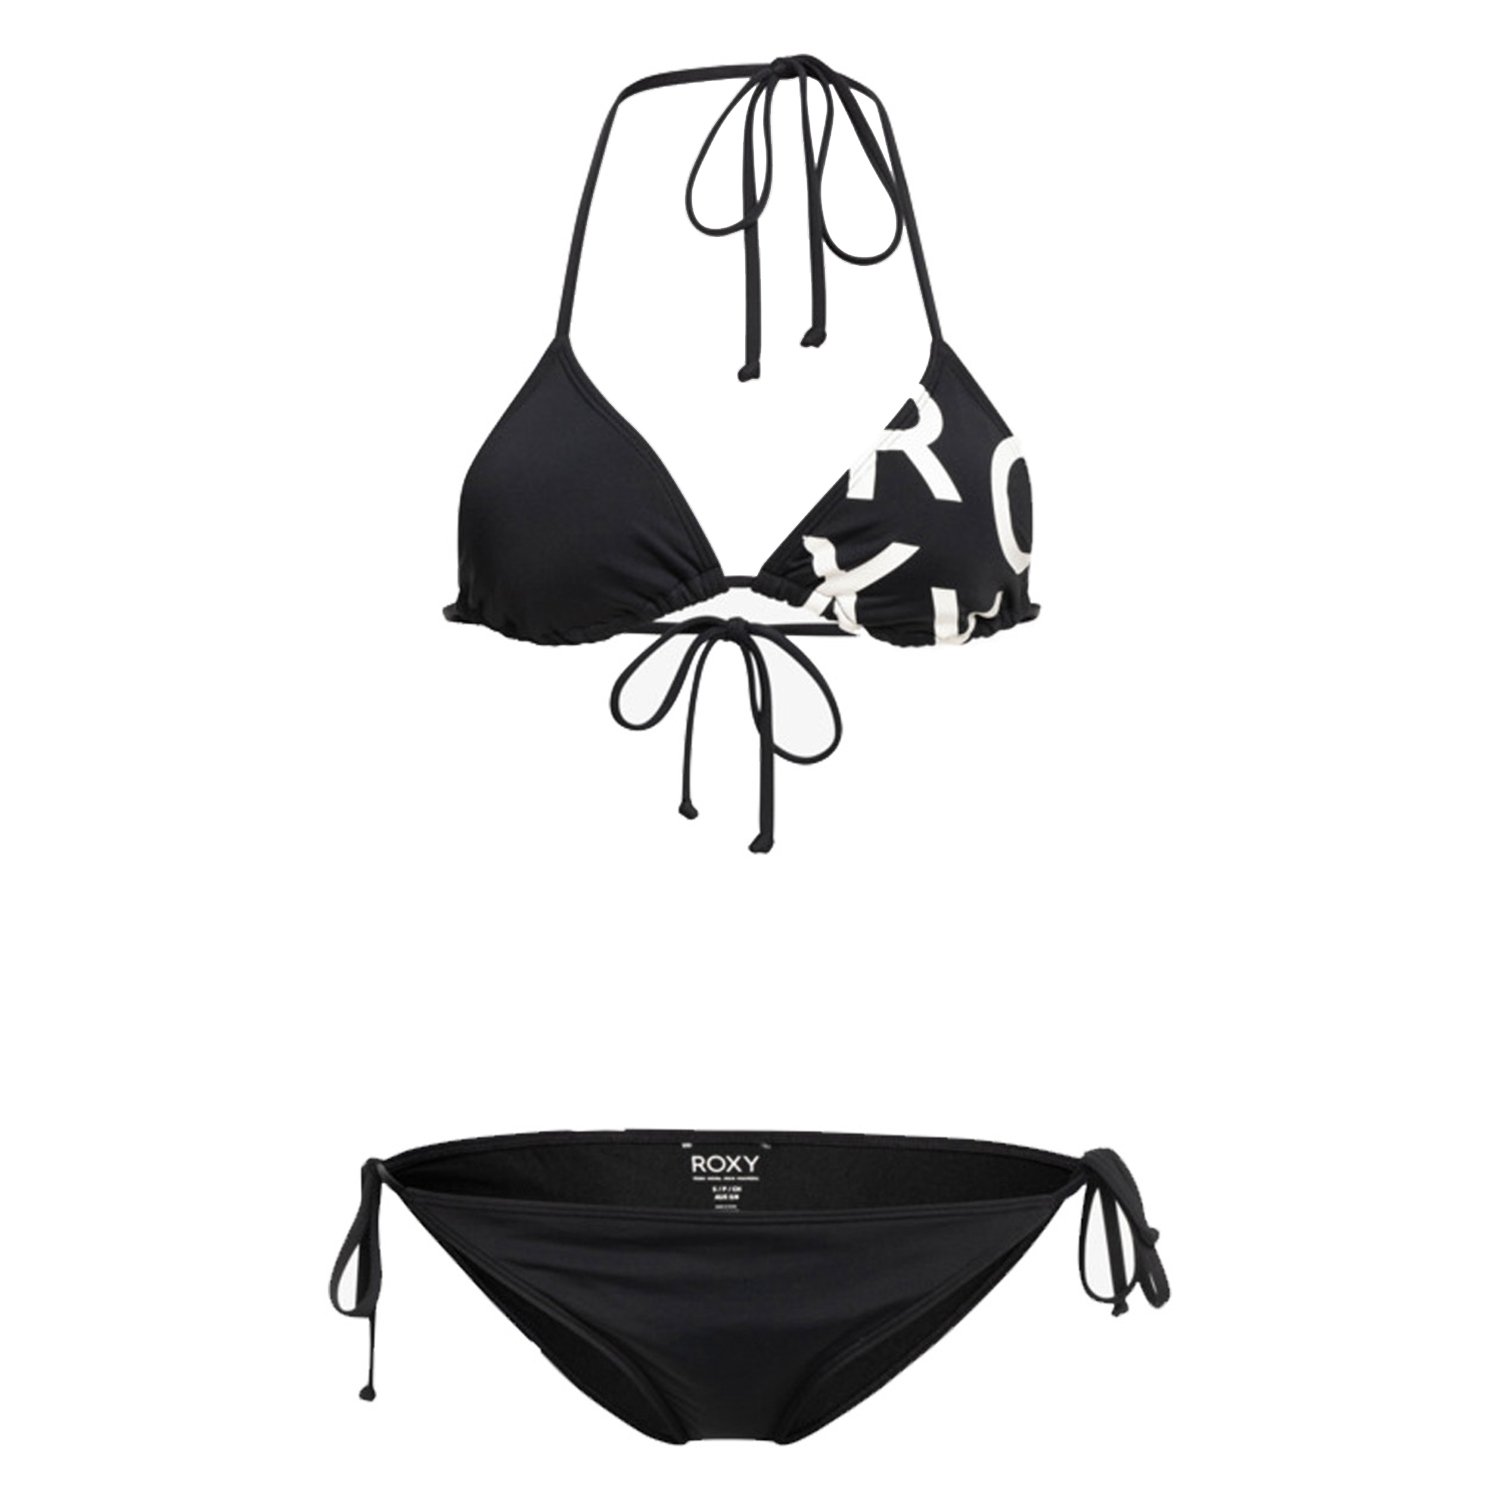 Roxy Beach Classics Tie Side Triangle Kadın Bikini - Siyah - 1